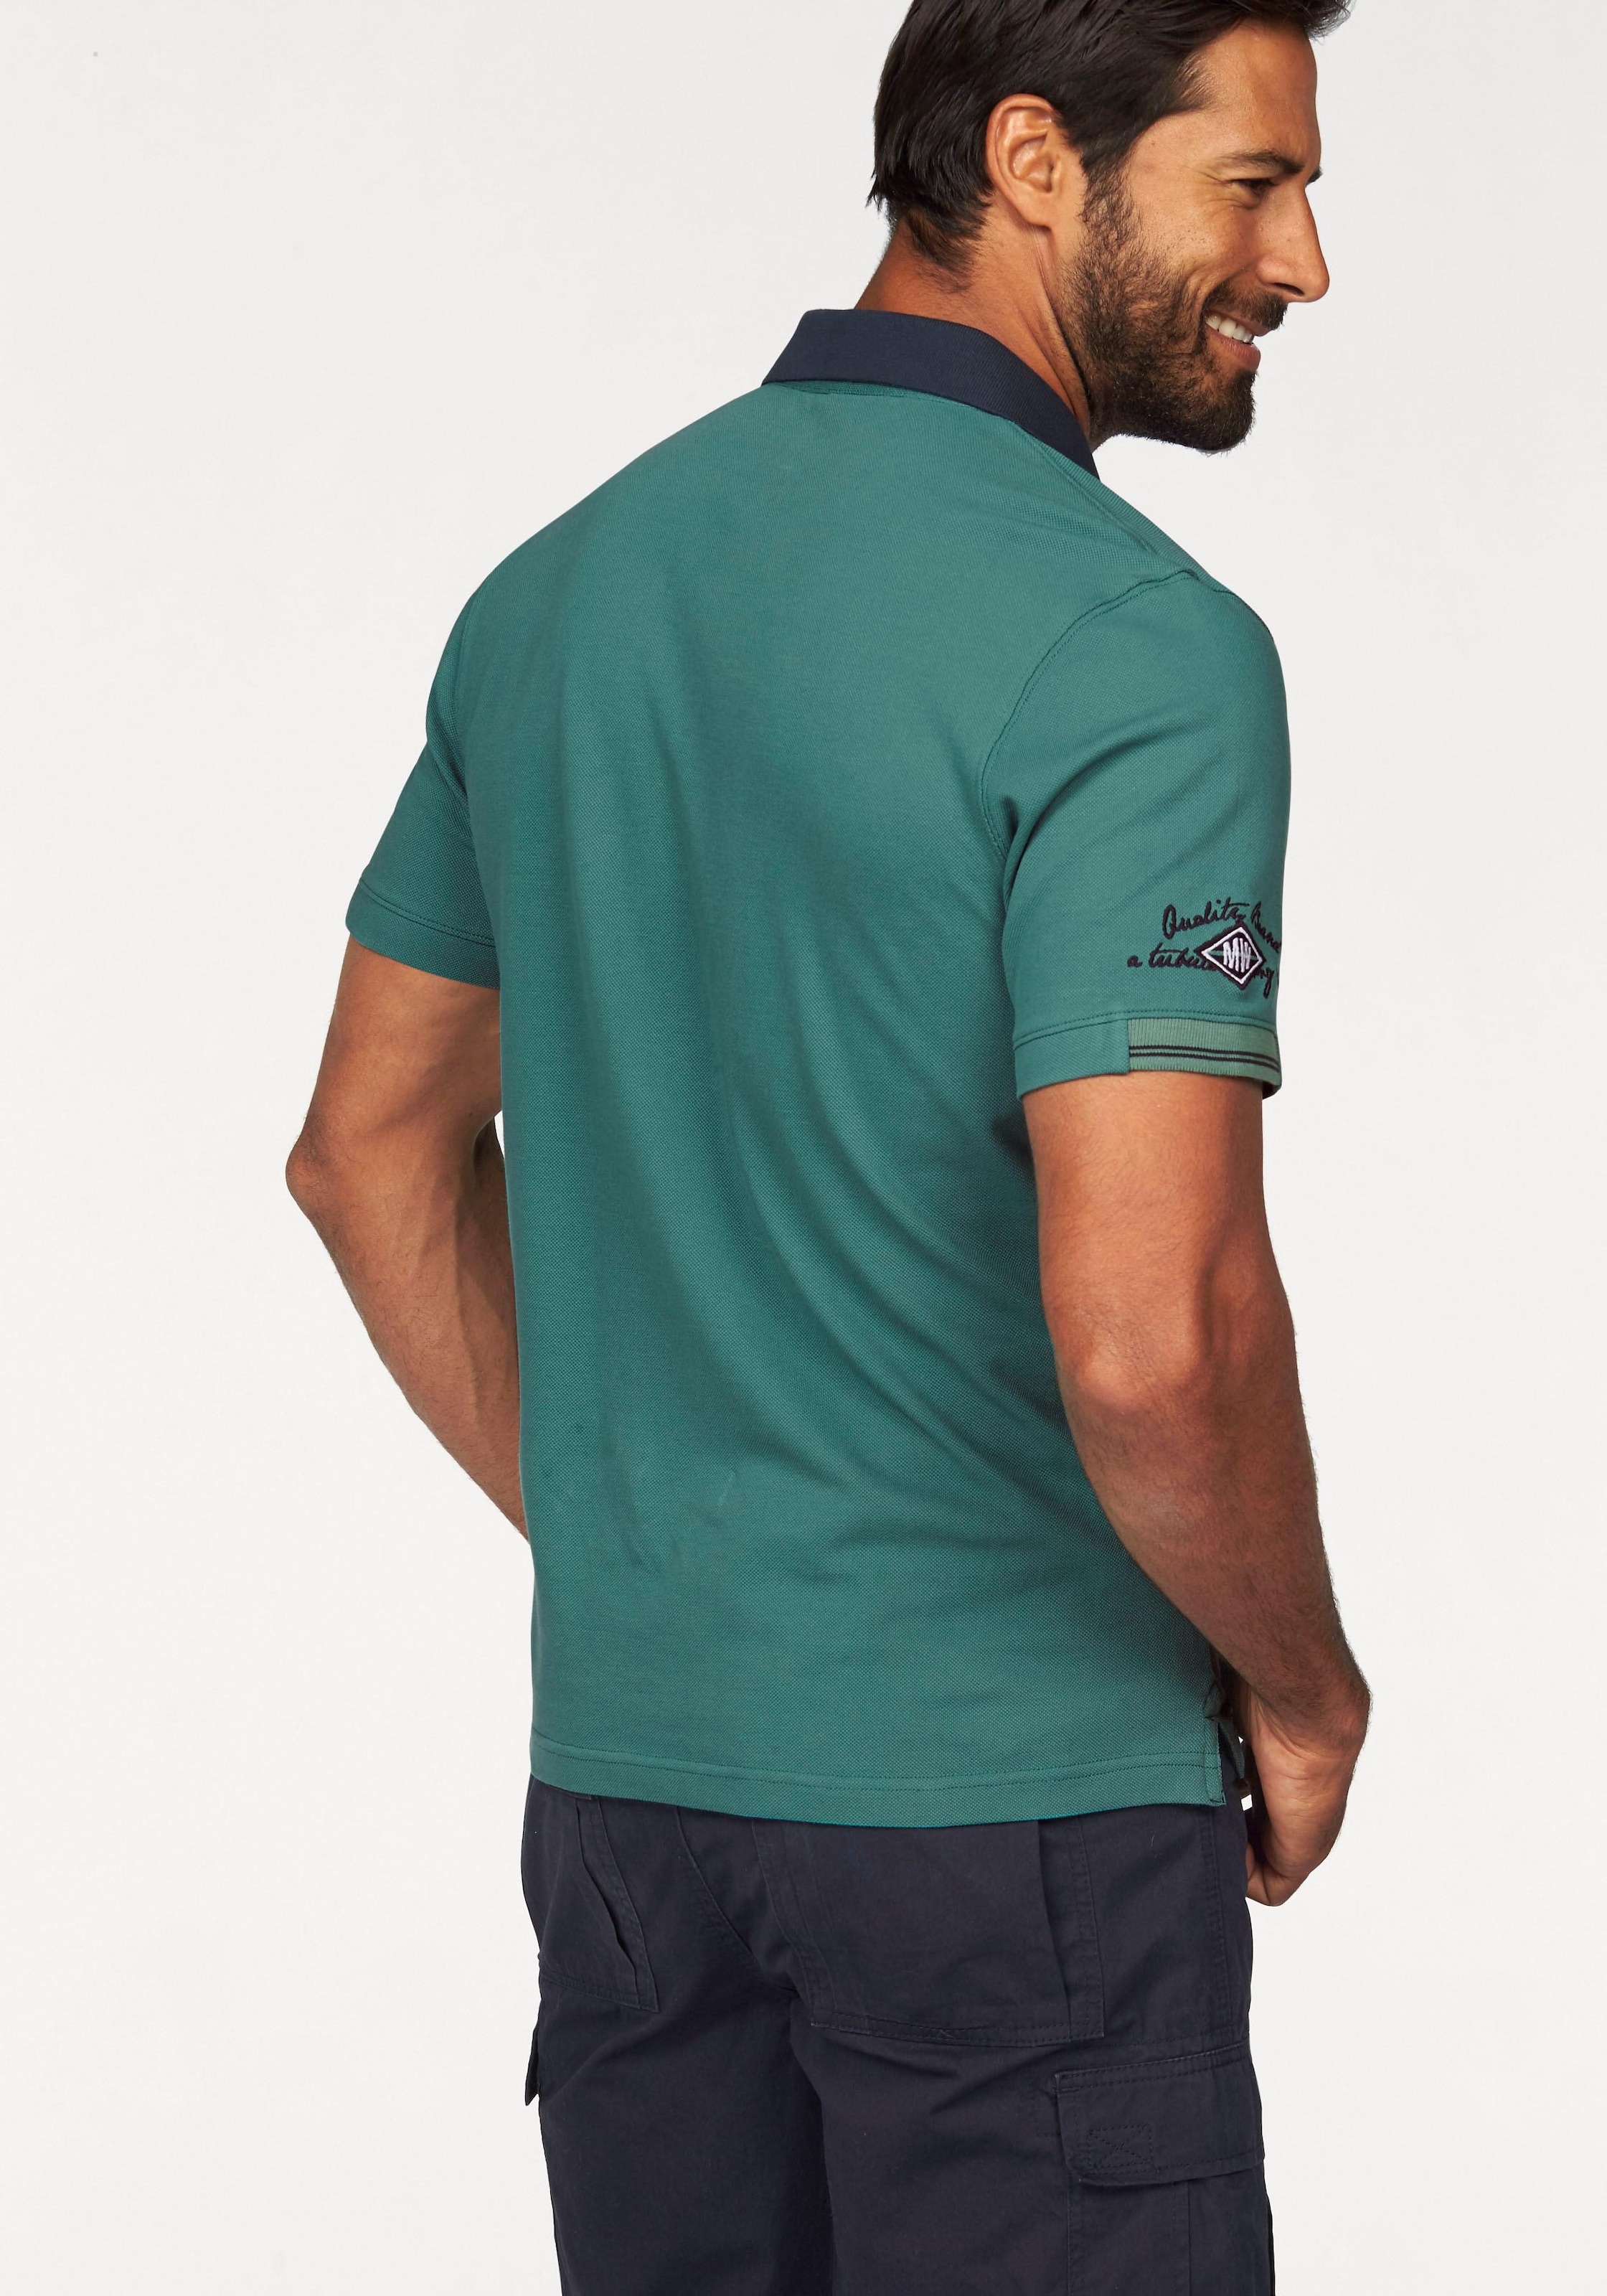 Man's World Poloshirt, in Piqué-Qualität mit Kontrastkragen